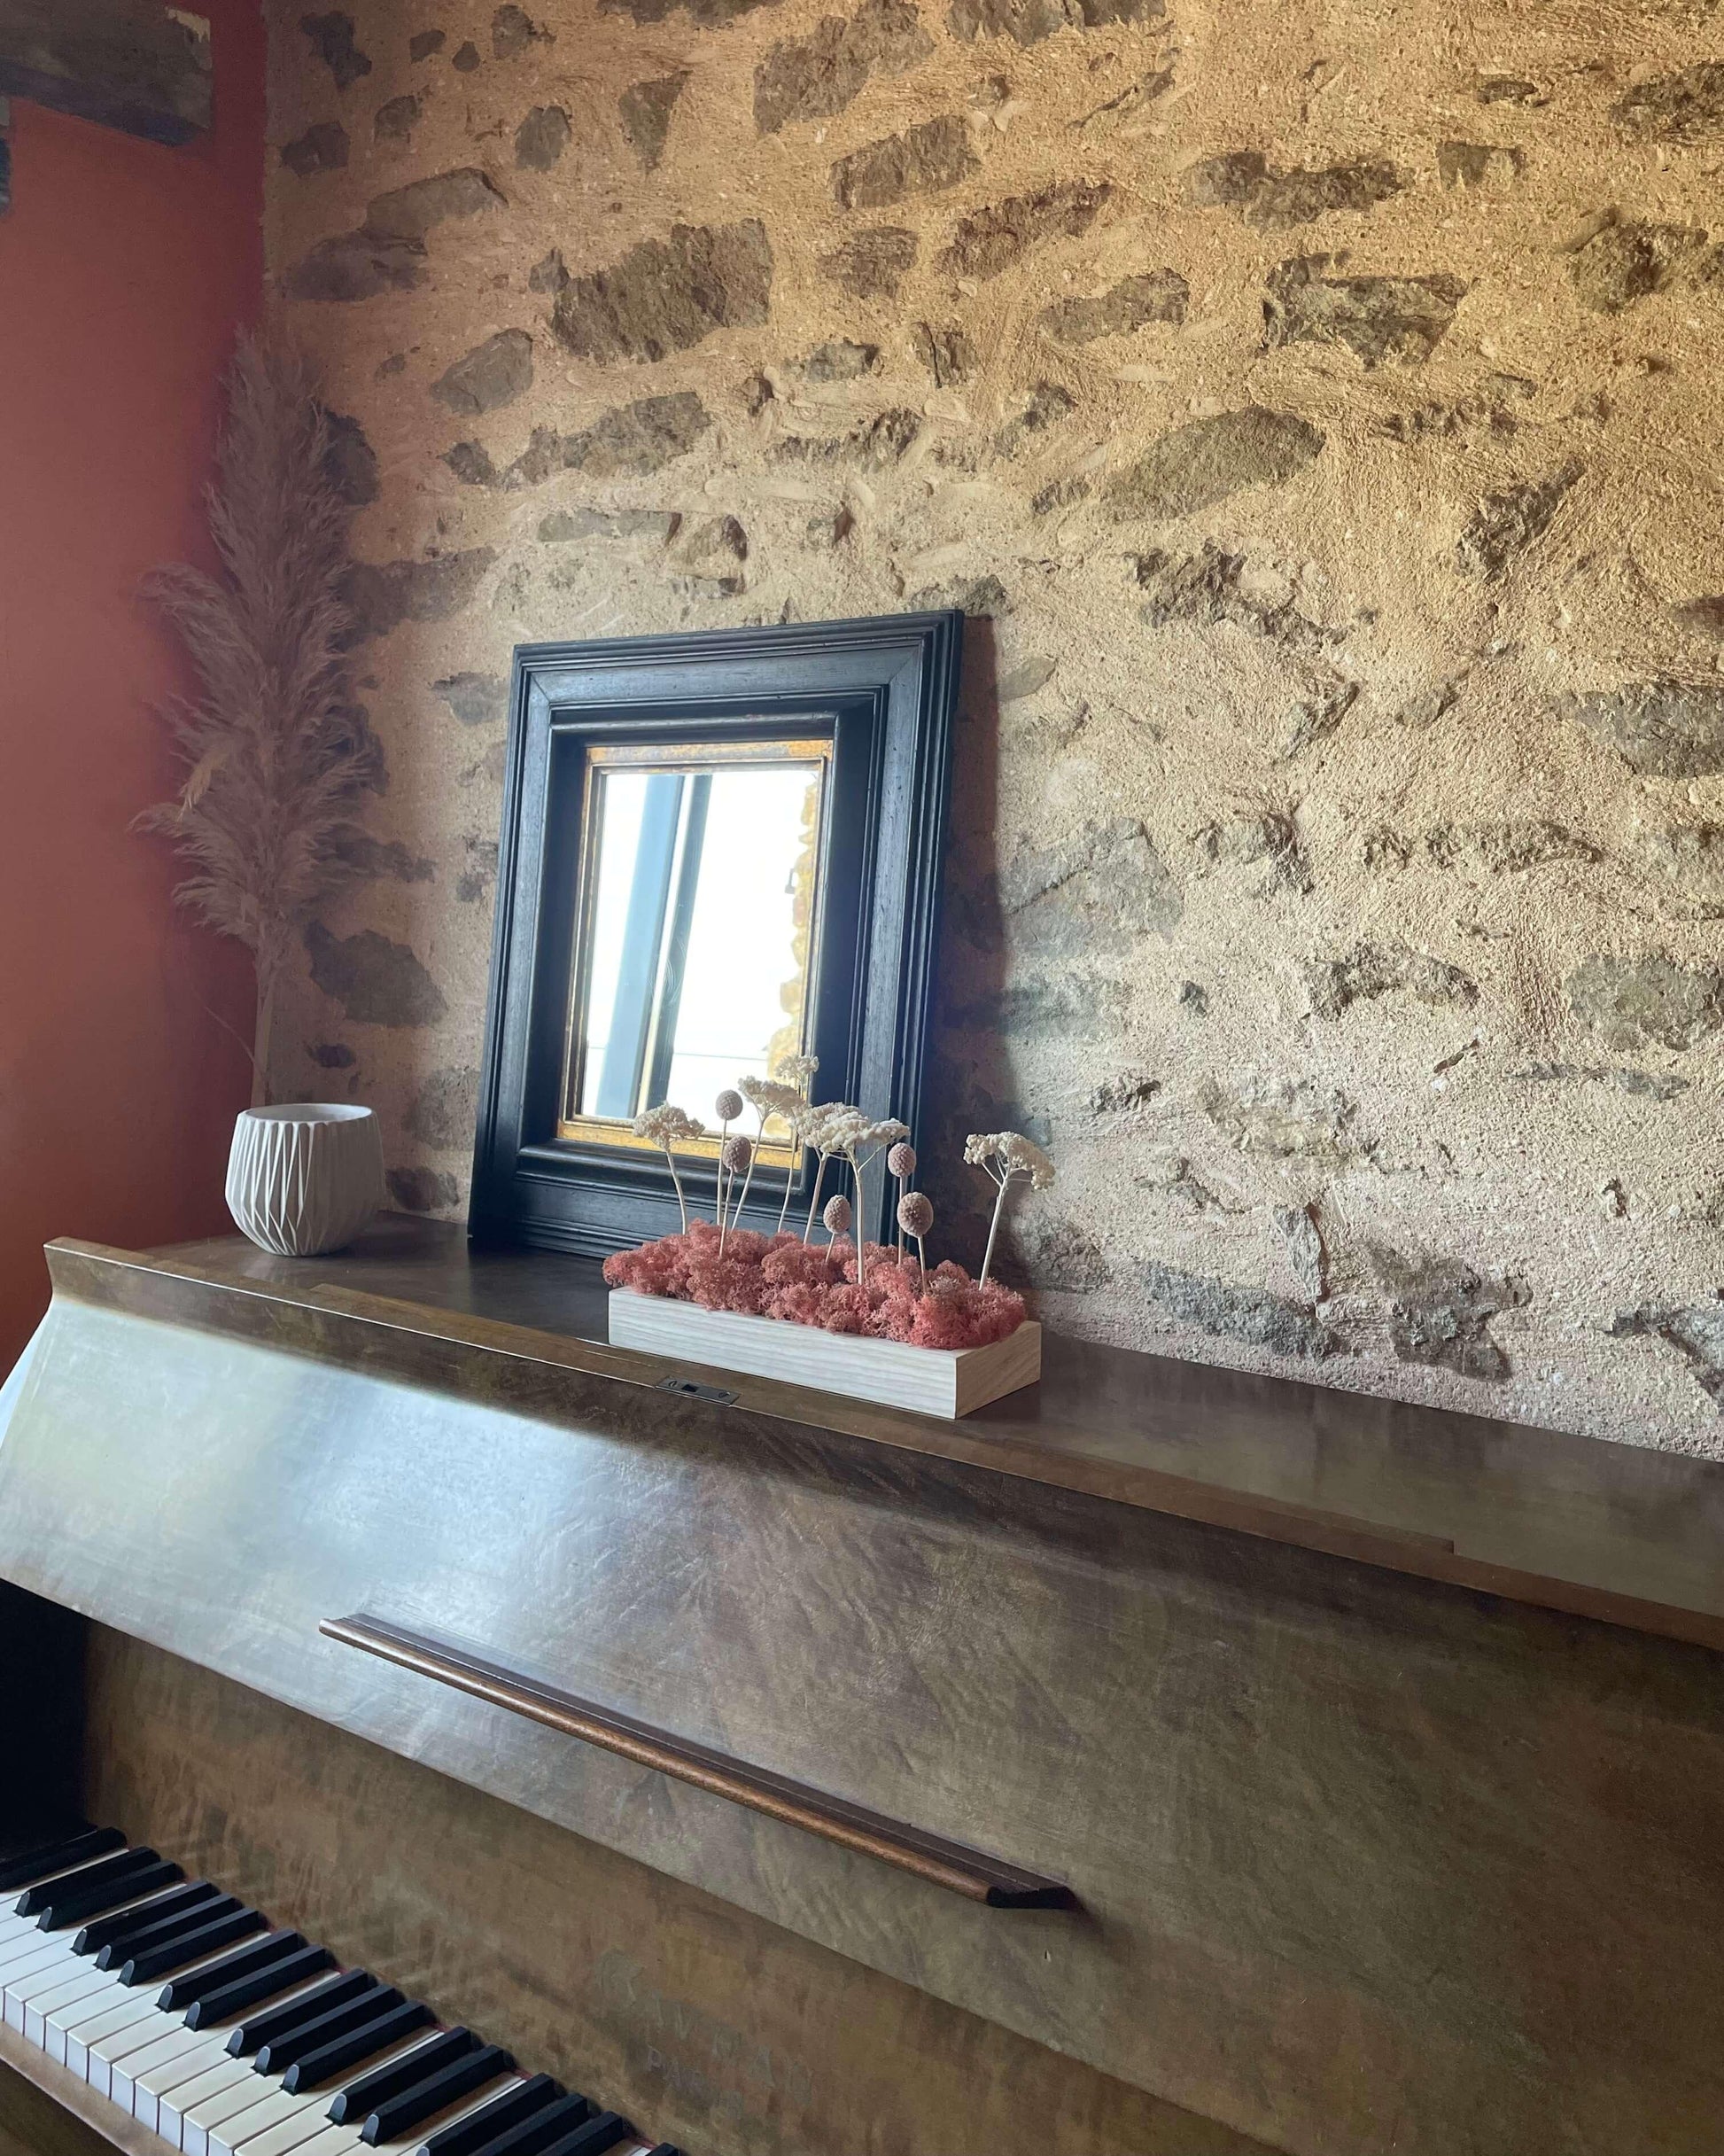 Décoration intérieure au design floral en lichen stabilisé et plantes naturelles stabilisées dans une maison contemporaine. Composition en végétaux stabilisés posé sur un piano devant un miroir, et un mur en pierre. La composition est sur les tons roses..